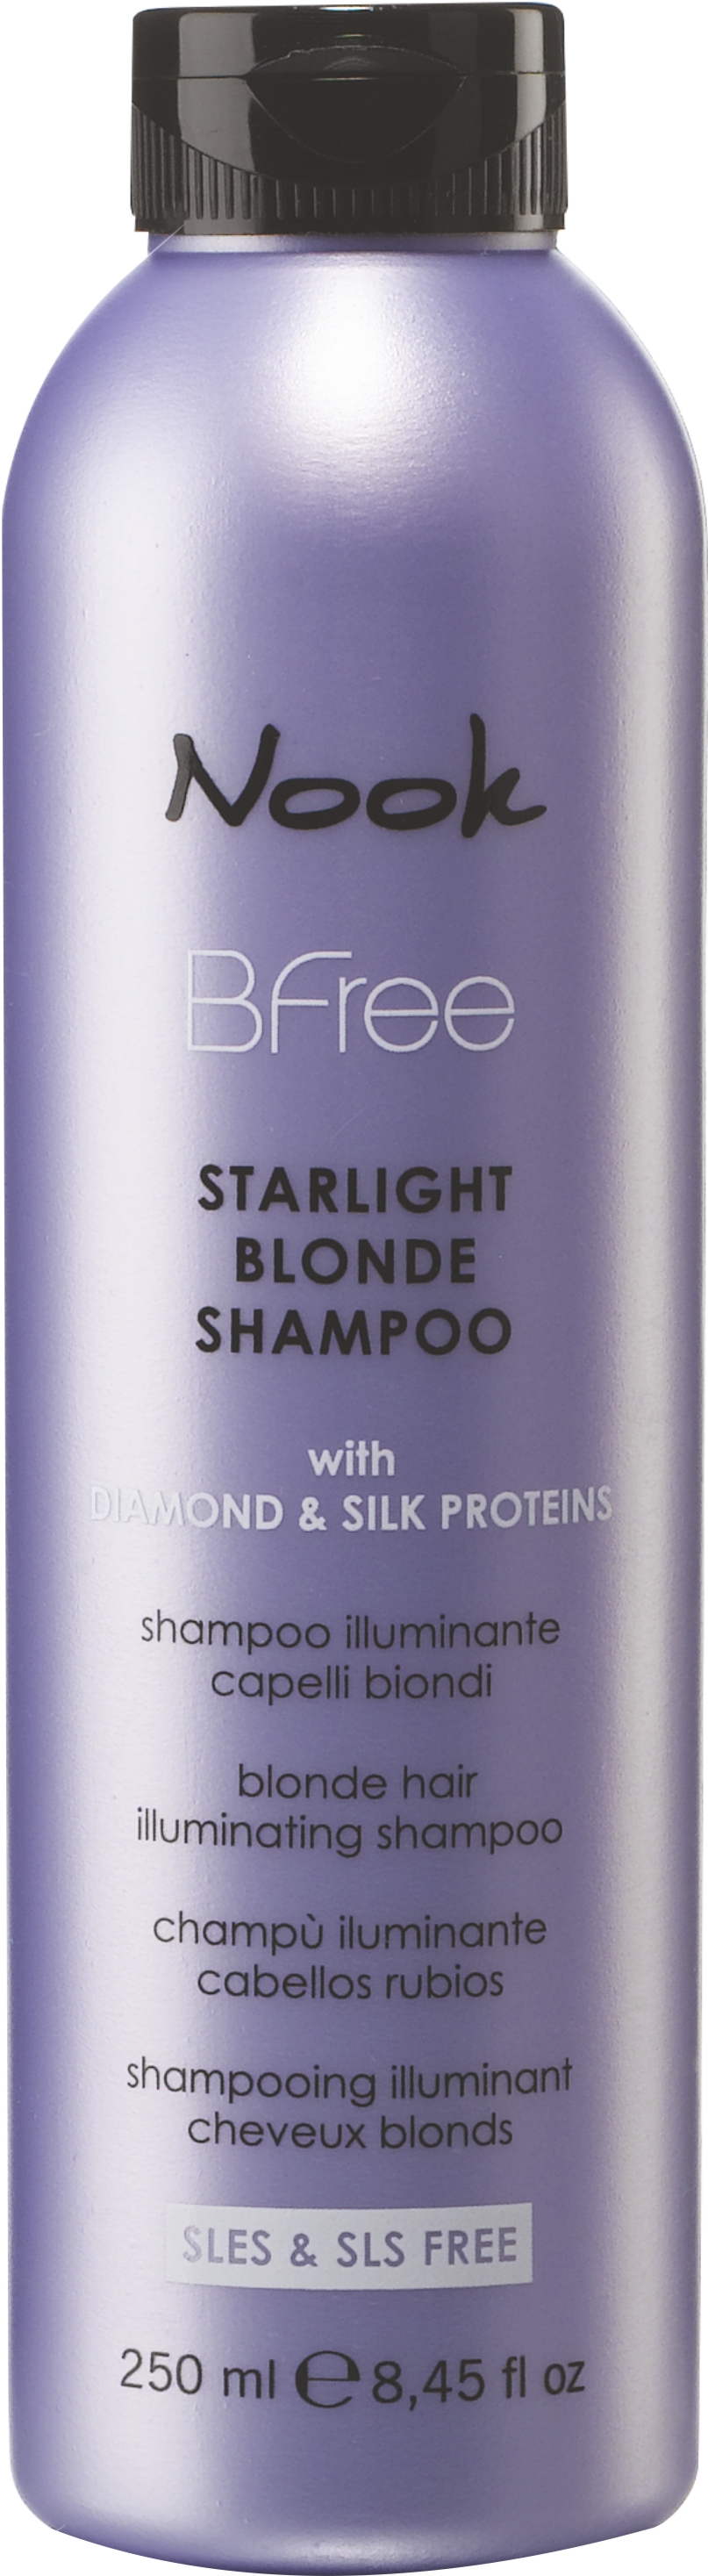 NOOK Bfree Starlight Blonde fényesítő sampon 250 ml